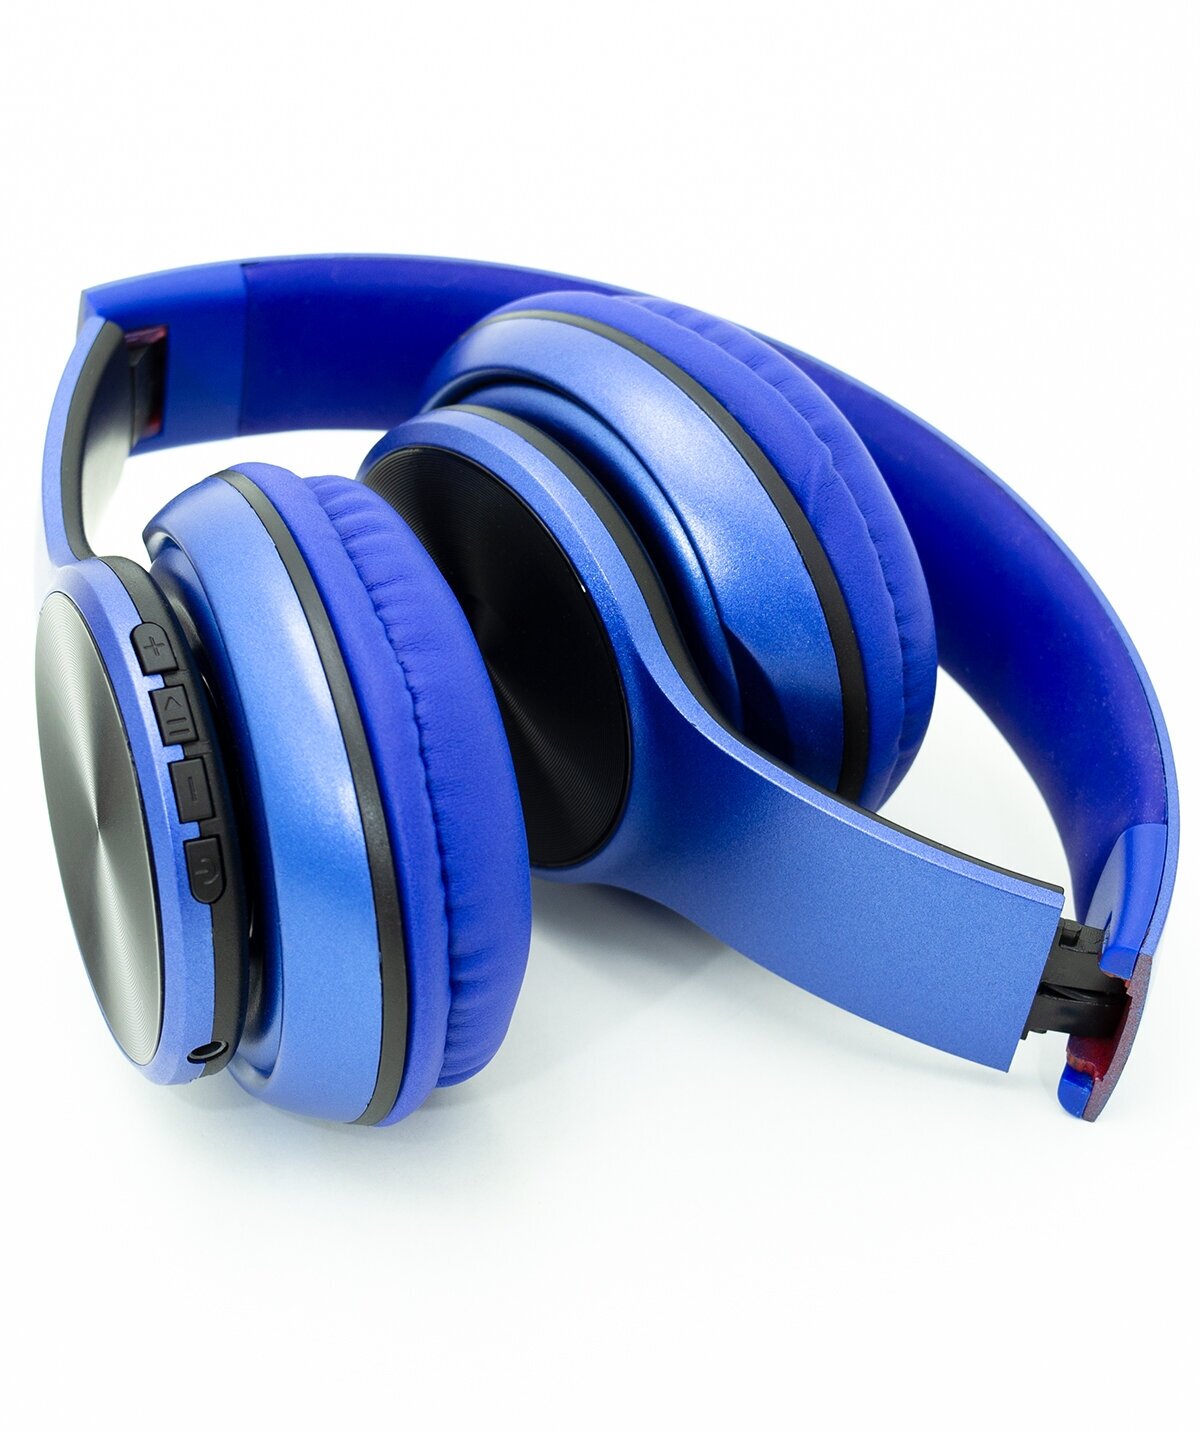 Наушники с микрофоном (синие) UrbanStorm полноразмерные беспроводные / Hi-Fi sound, usb, mini jack 3.5 mm, MicroSD / на голову